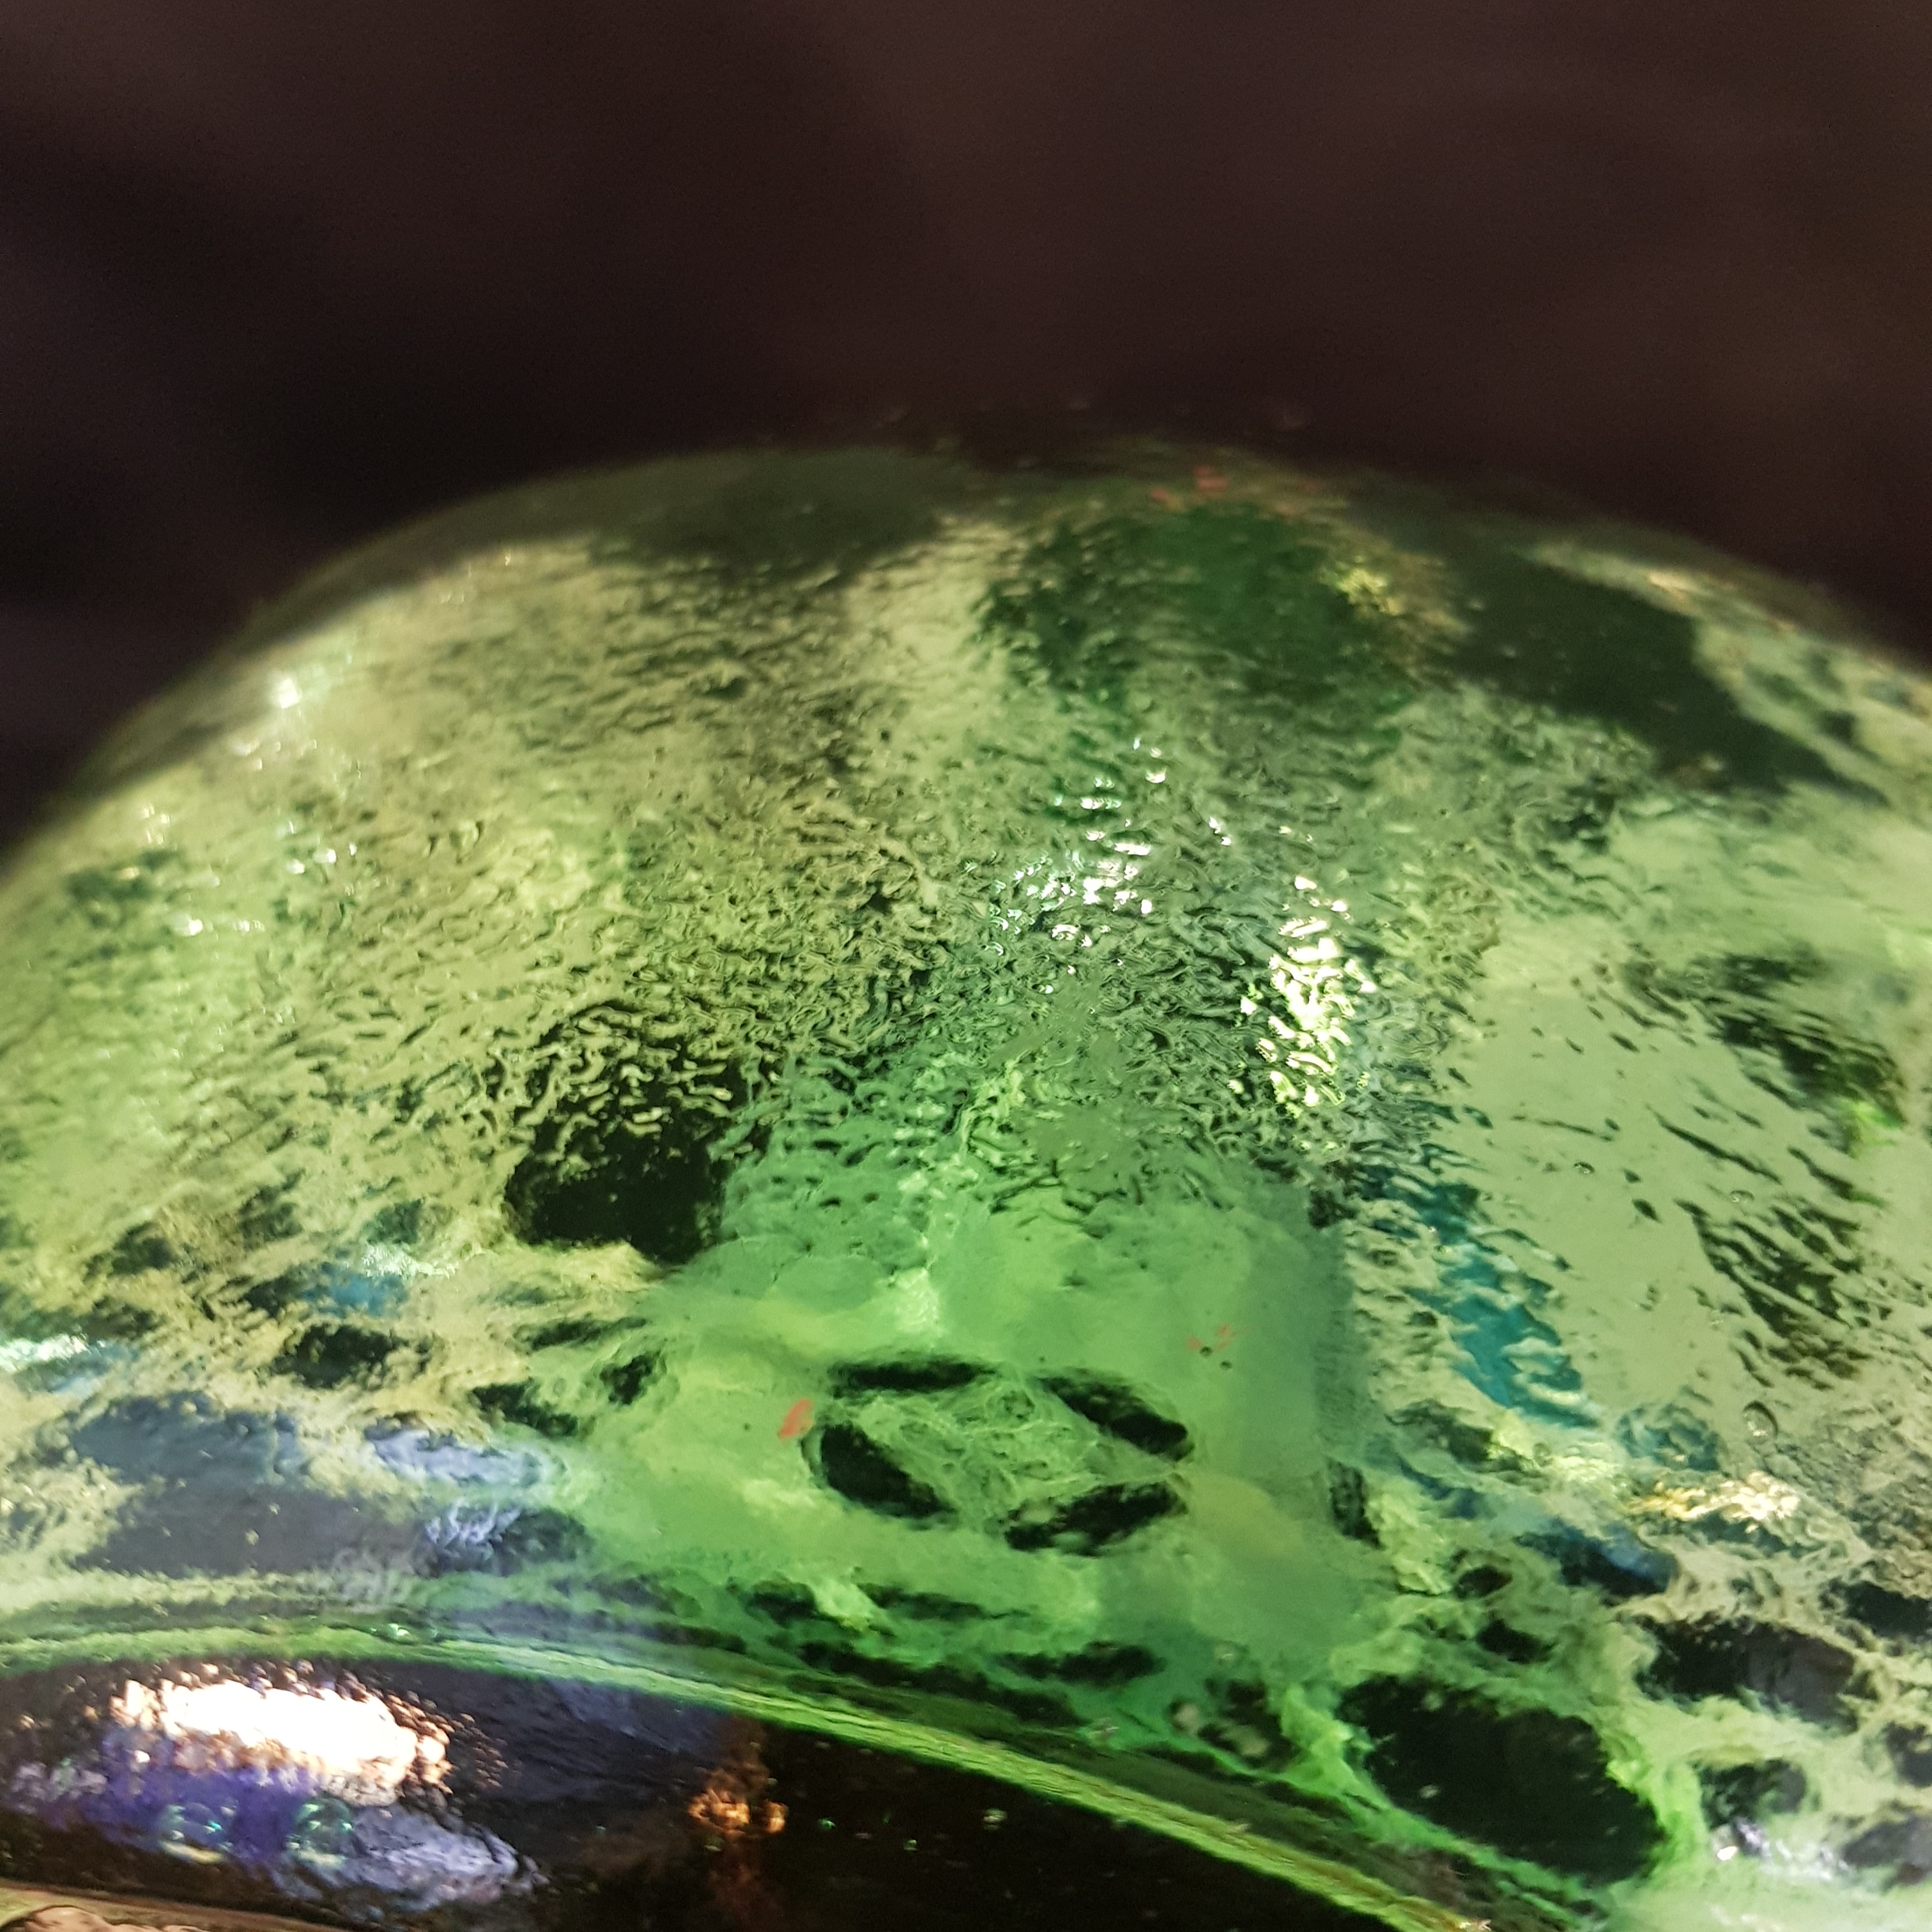 bouteille verre decorative verte merveille et bout de chandelle 9